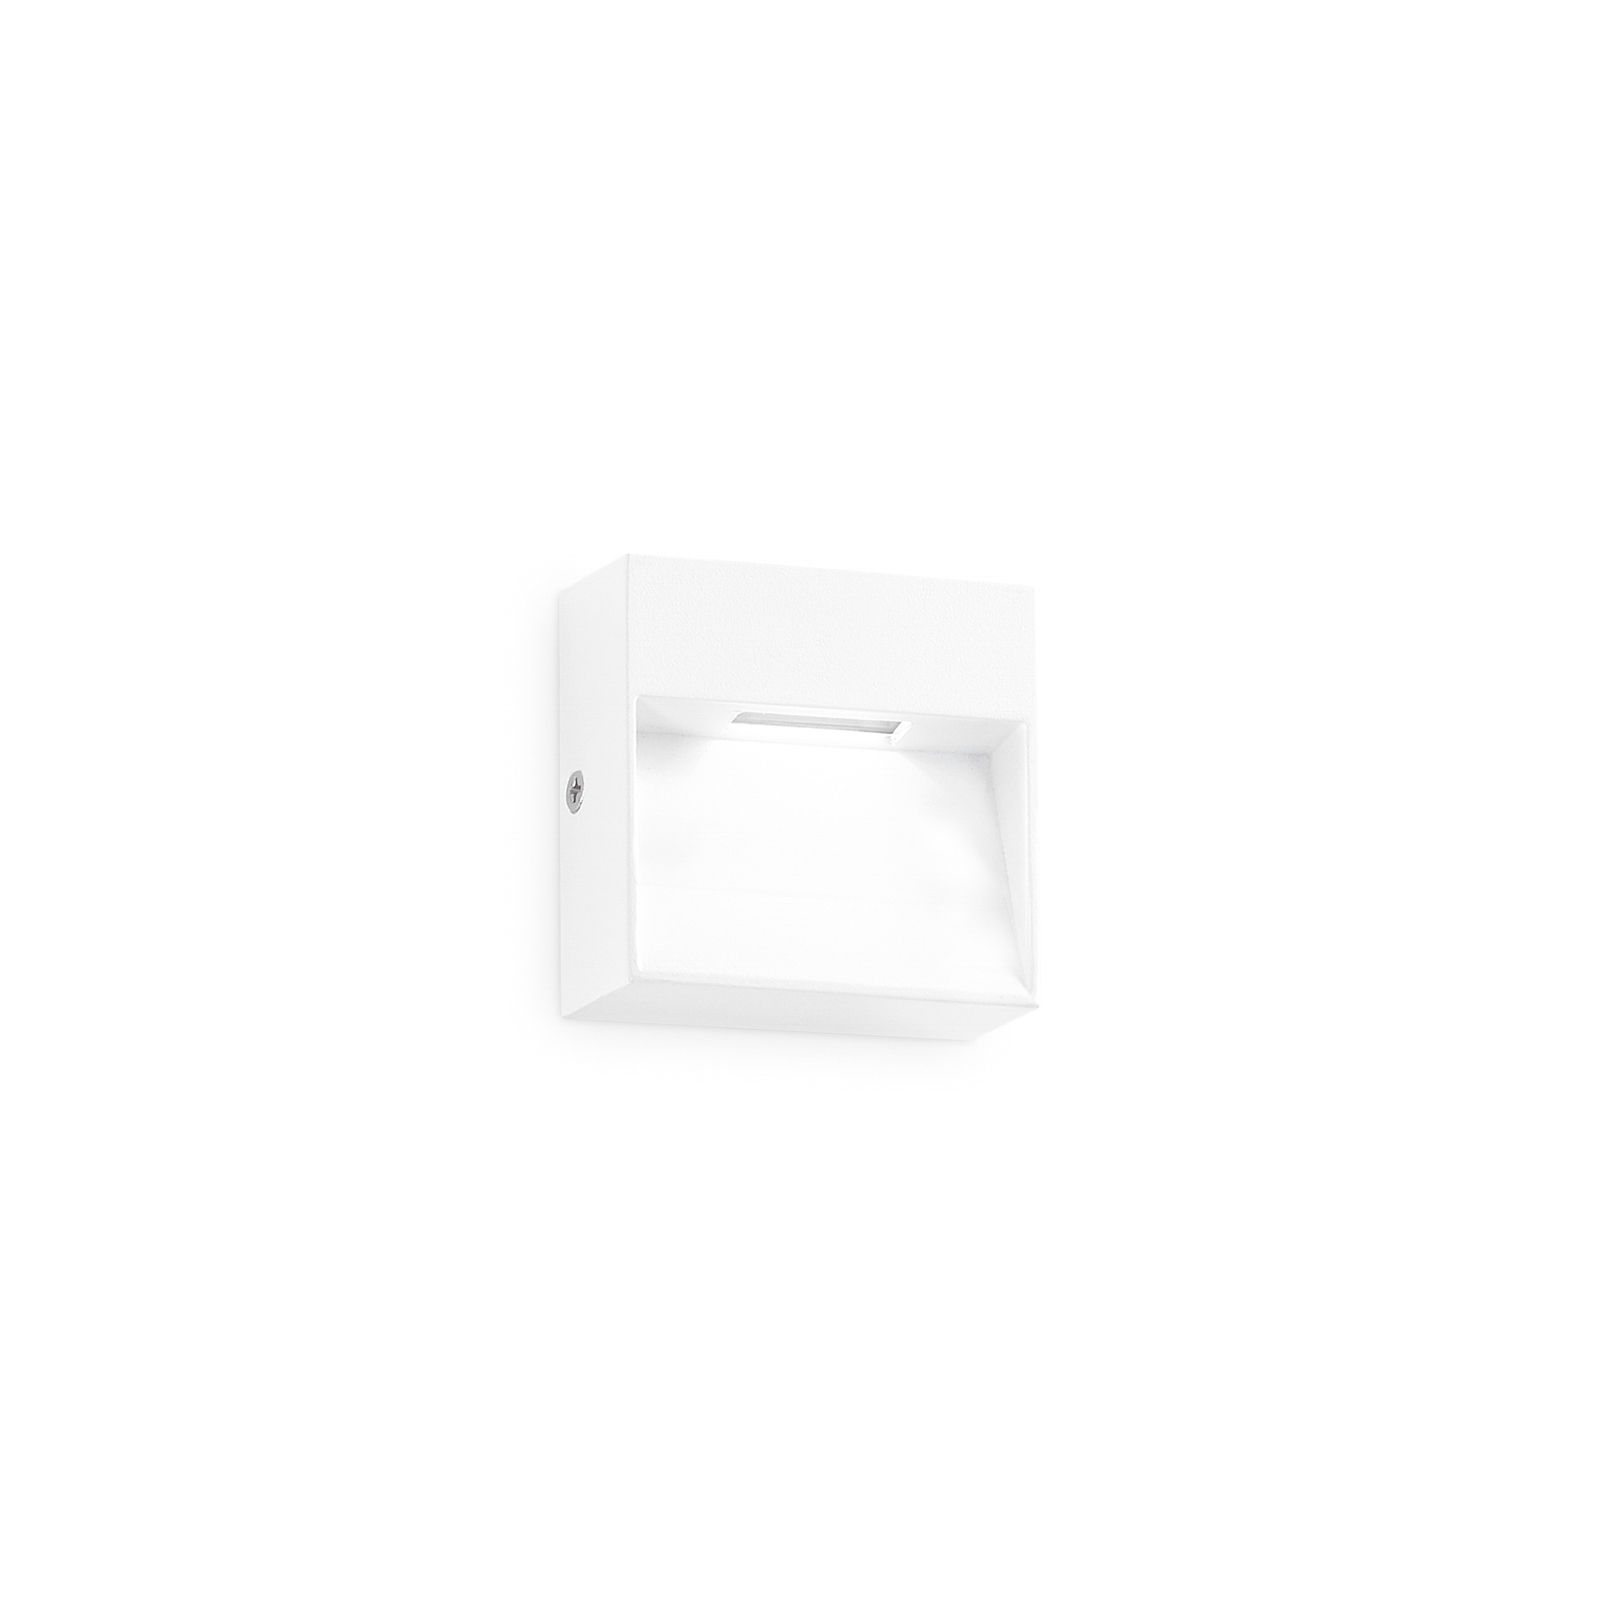 Ideal Lux kinkiet zewnętrzny LED Dedra, biały, 10 x 10 cm